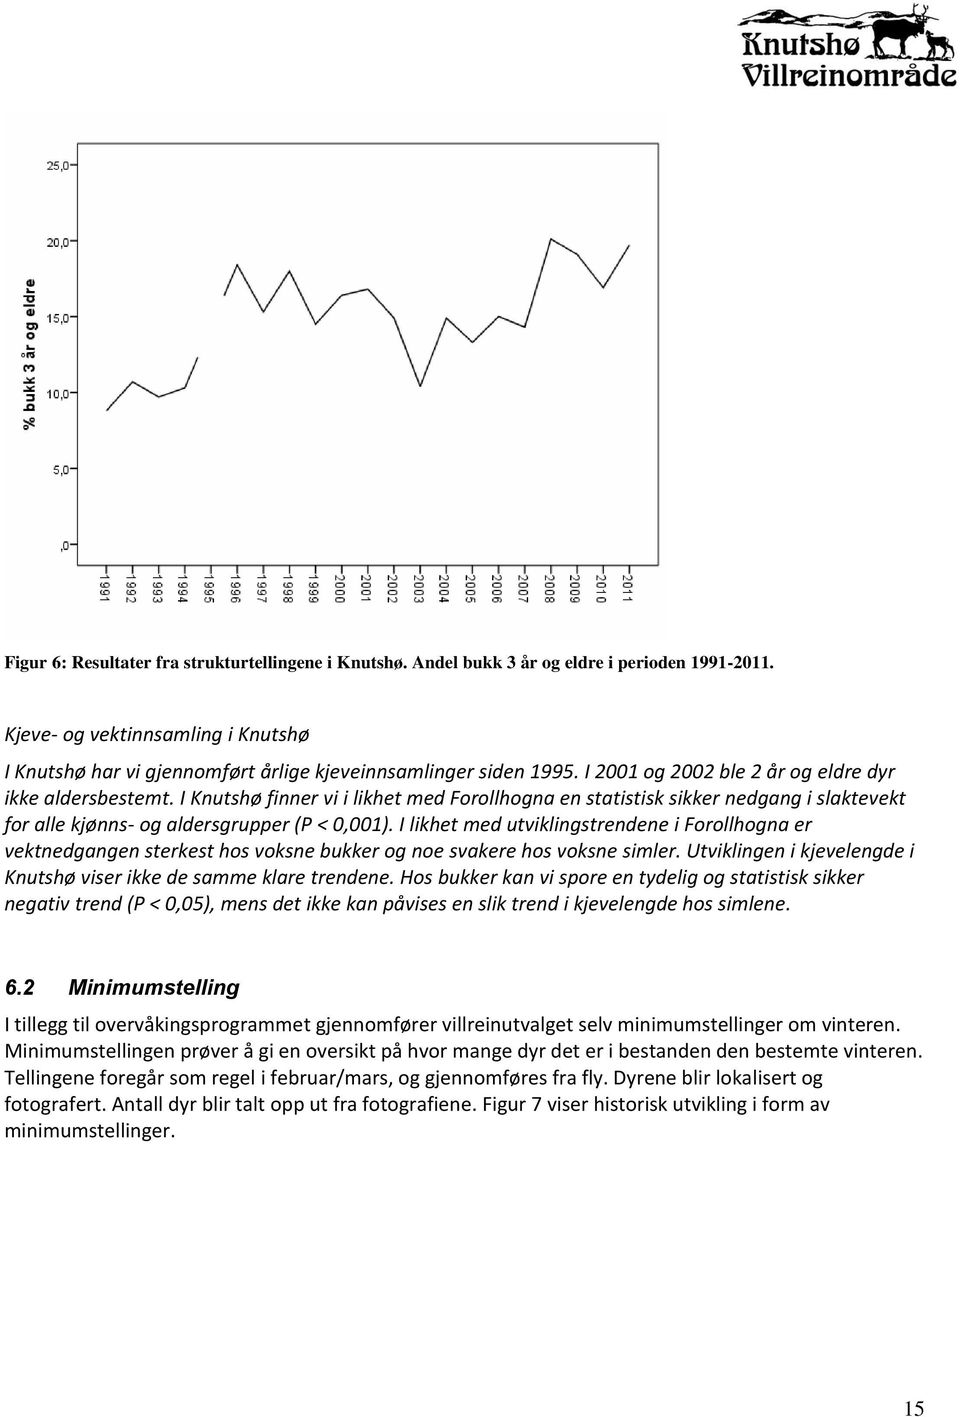 I Knutshø finner vi i likhet med Forollhogna en statistisk sikker nedgang i slaktevekt for alle kjønns- og aldersgrupper (P < 0,001).